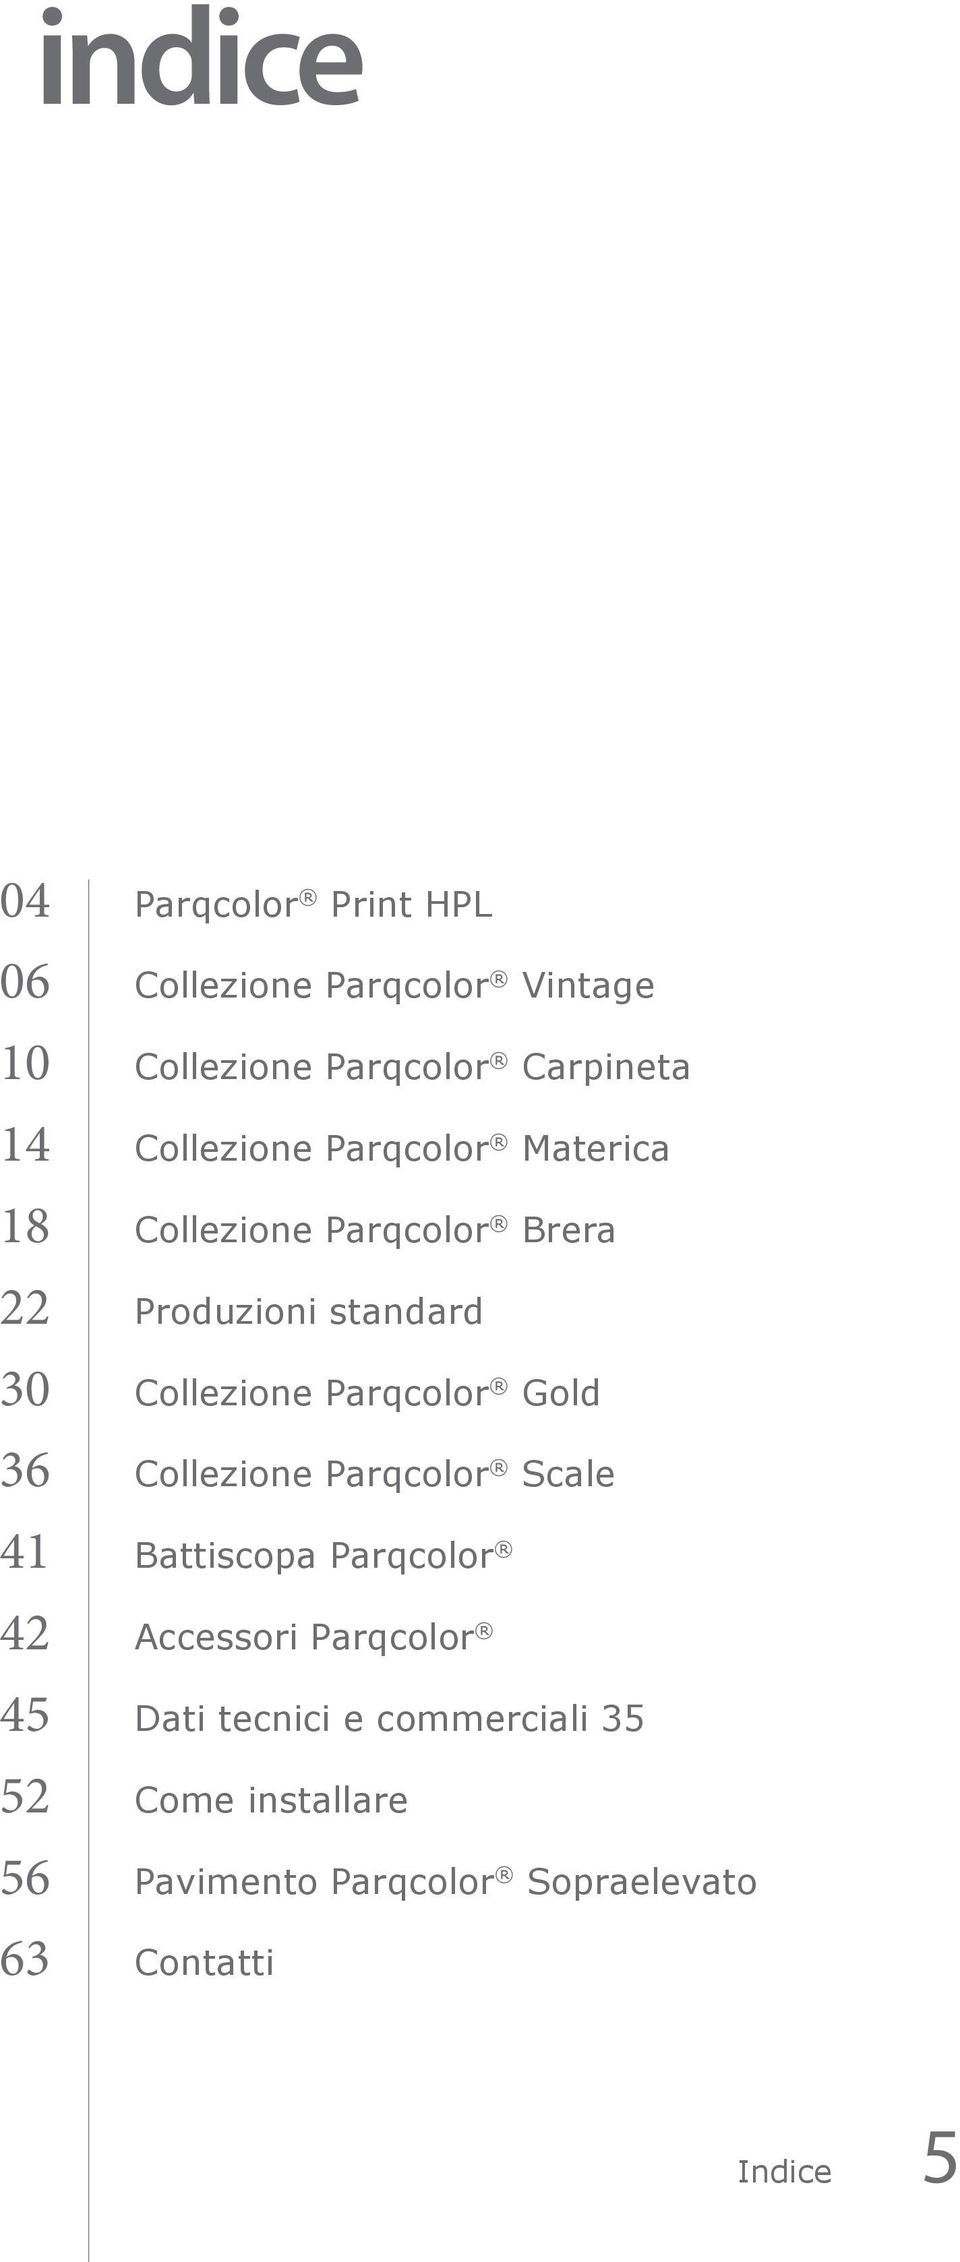 Parqcolor Gold 36 Collezione Parqcolor Scale 41 Battiscopa Parqcolor 42 Accessori Parqcolor 45